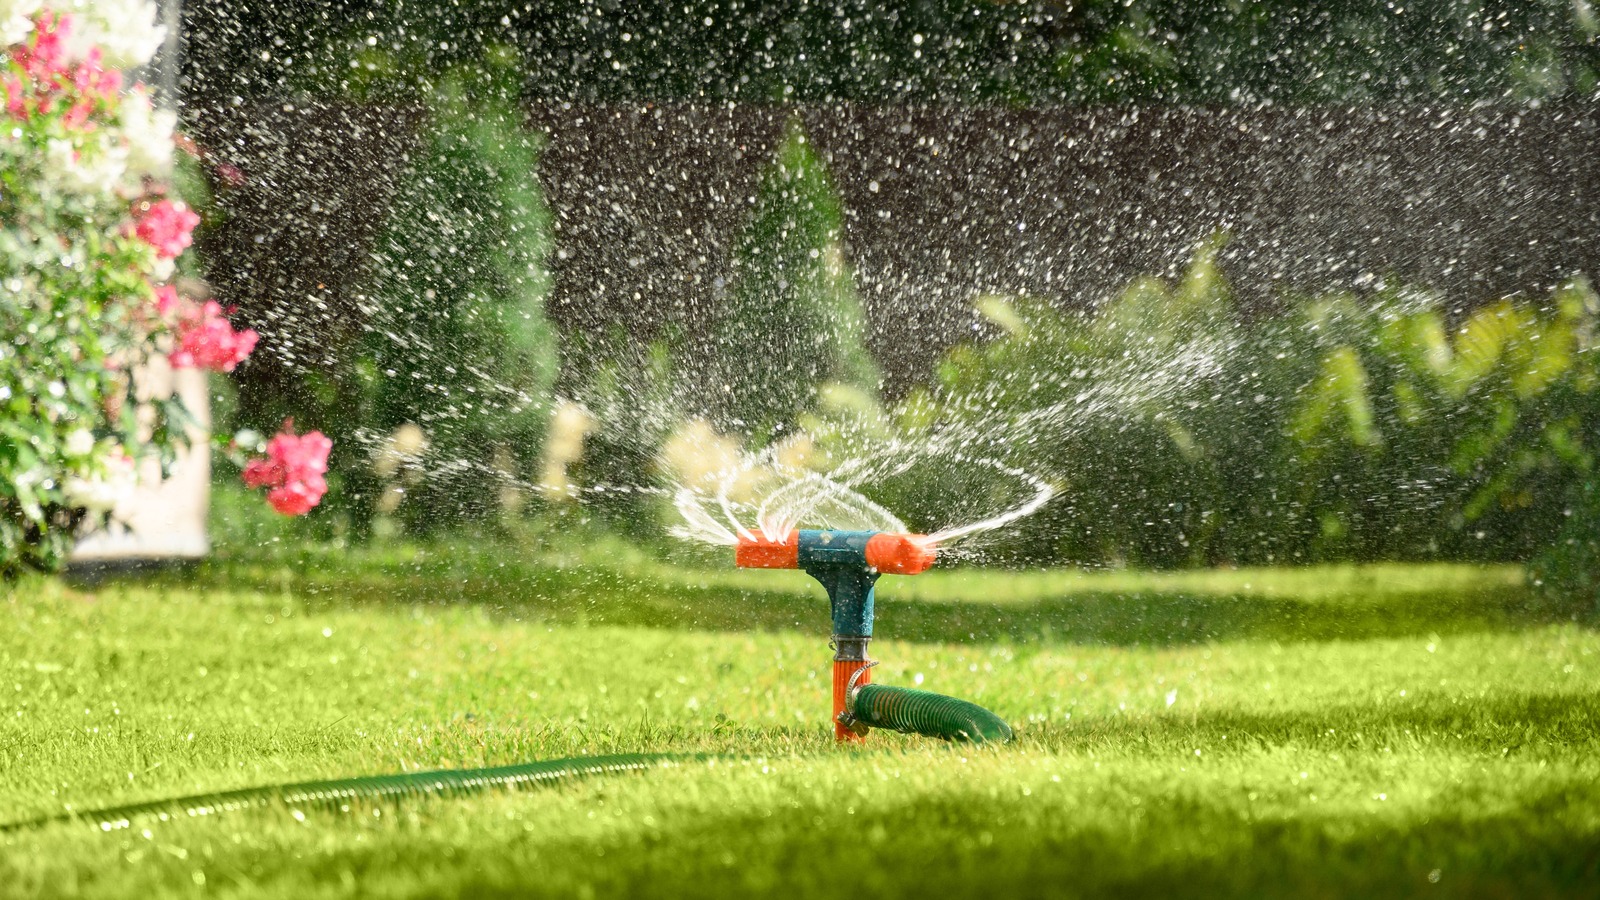  installing a lawn sprinkler system